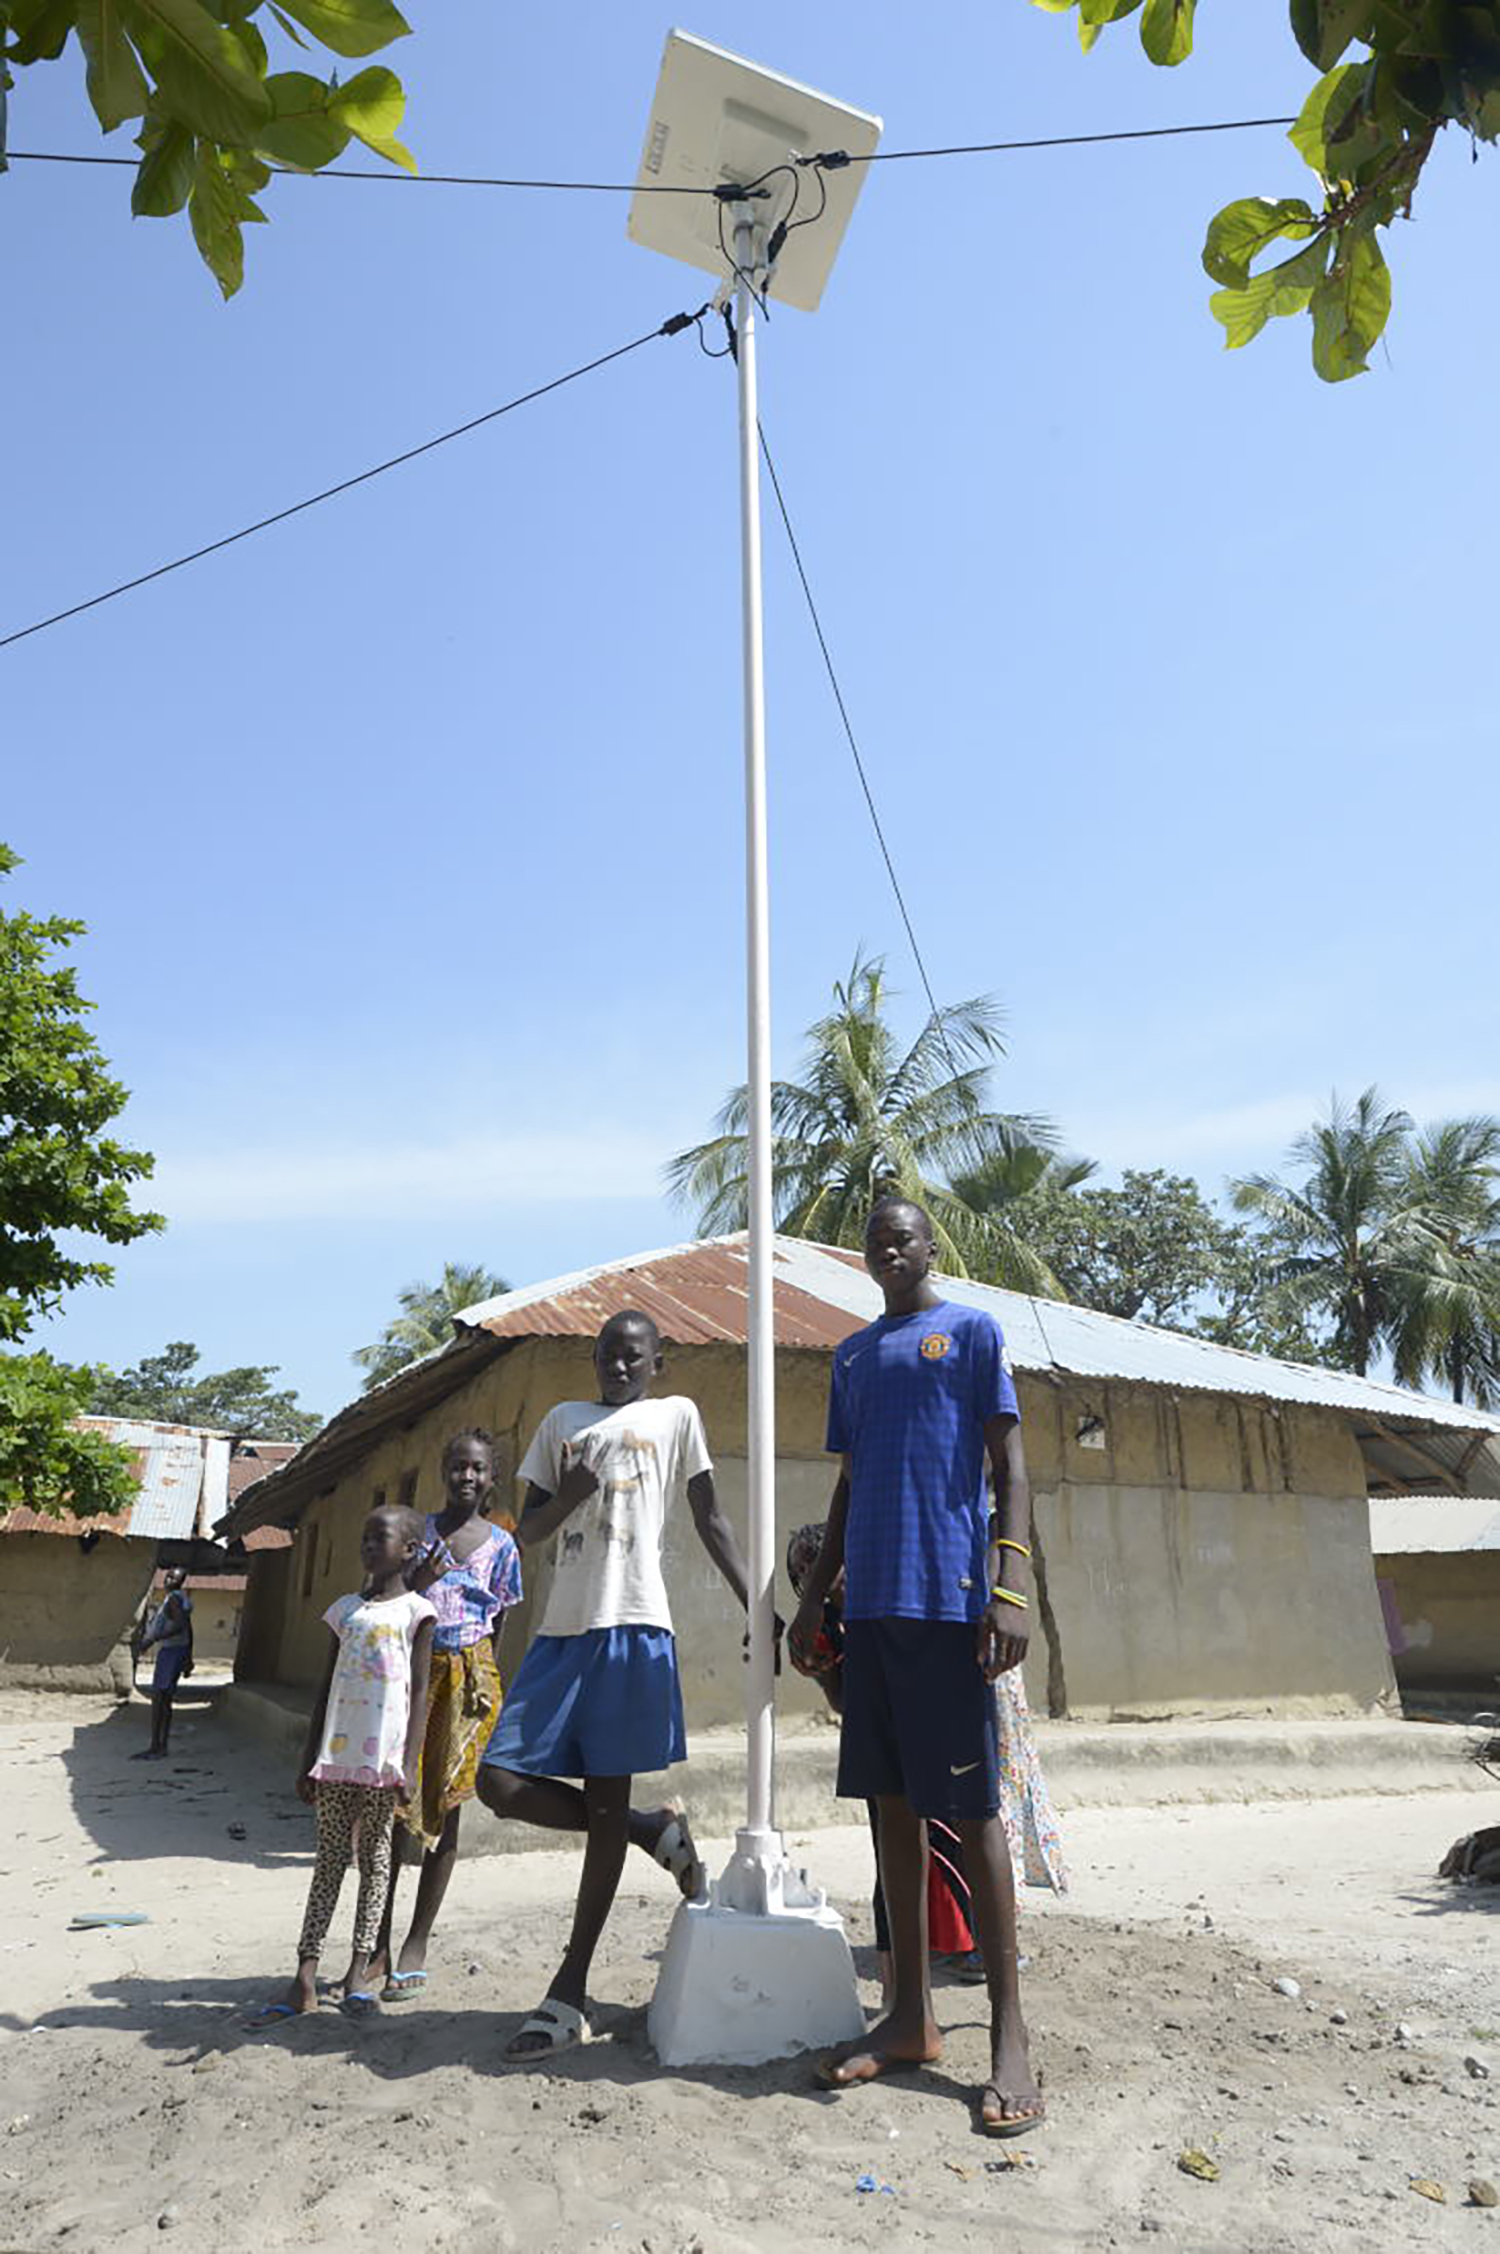 Le village en Casamance au Sénégal où le premier lampadaire solaire a été installé. ©Sunna Design 